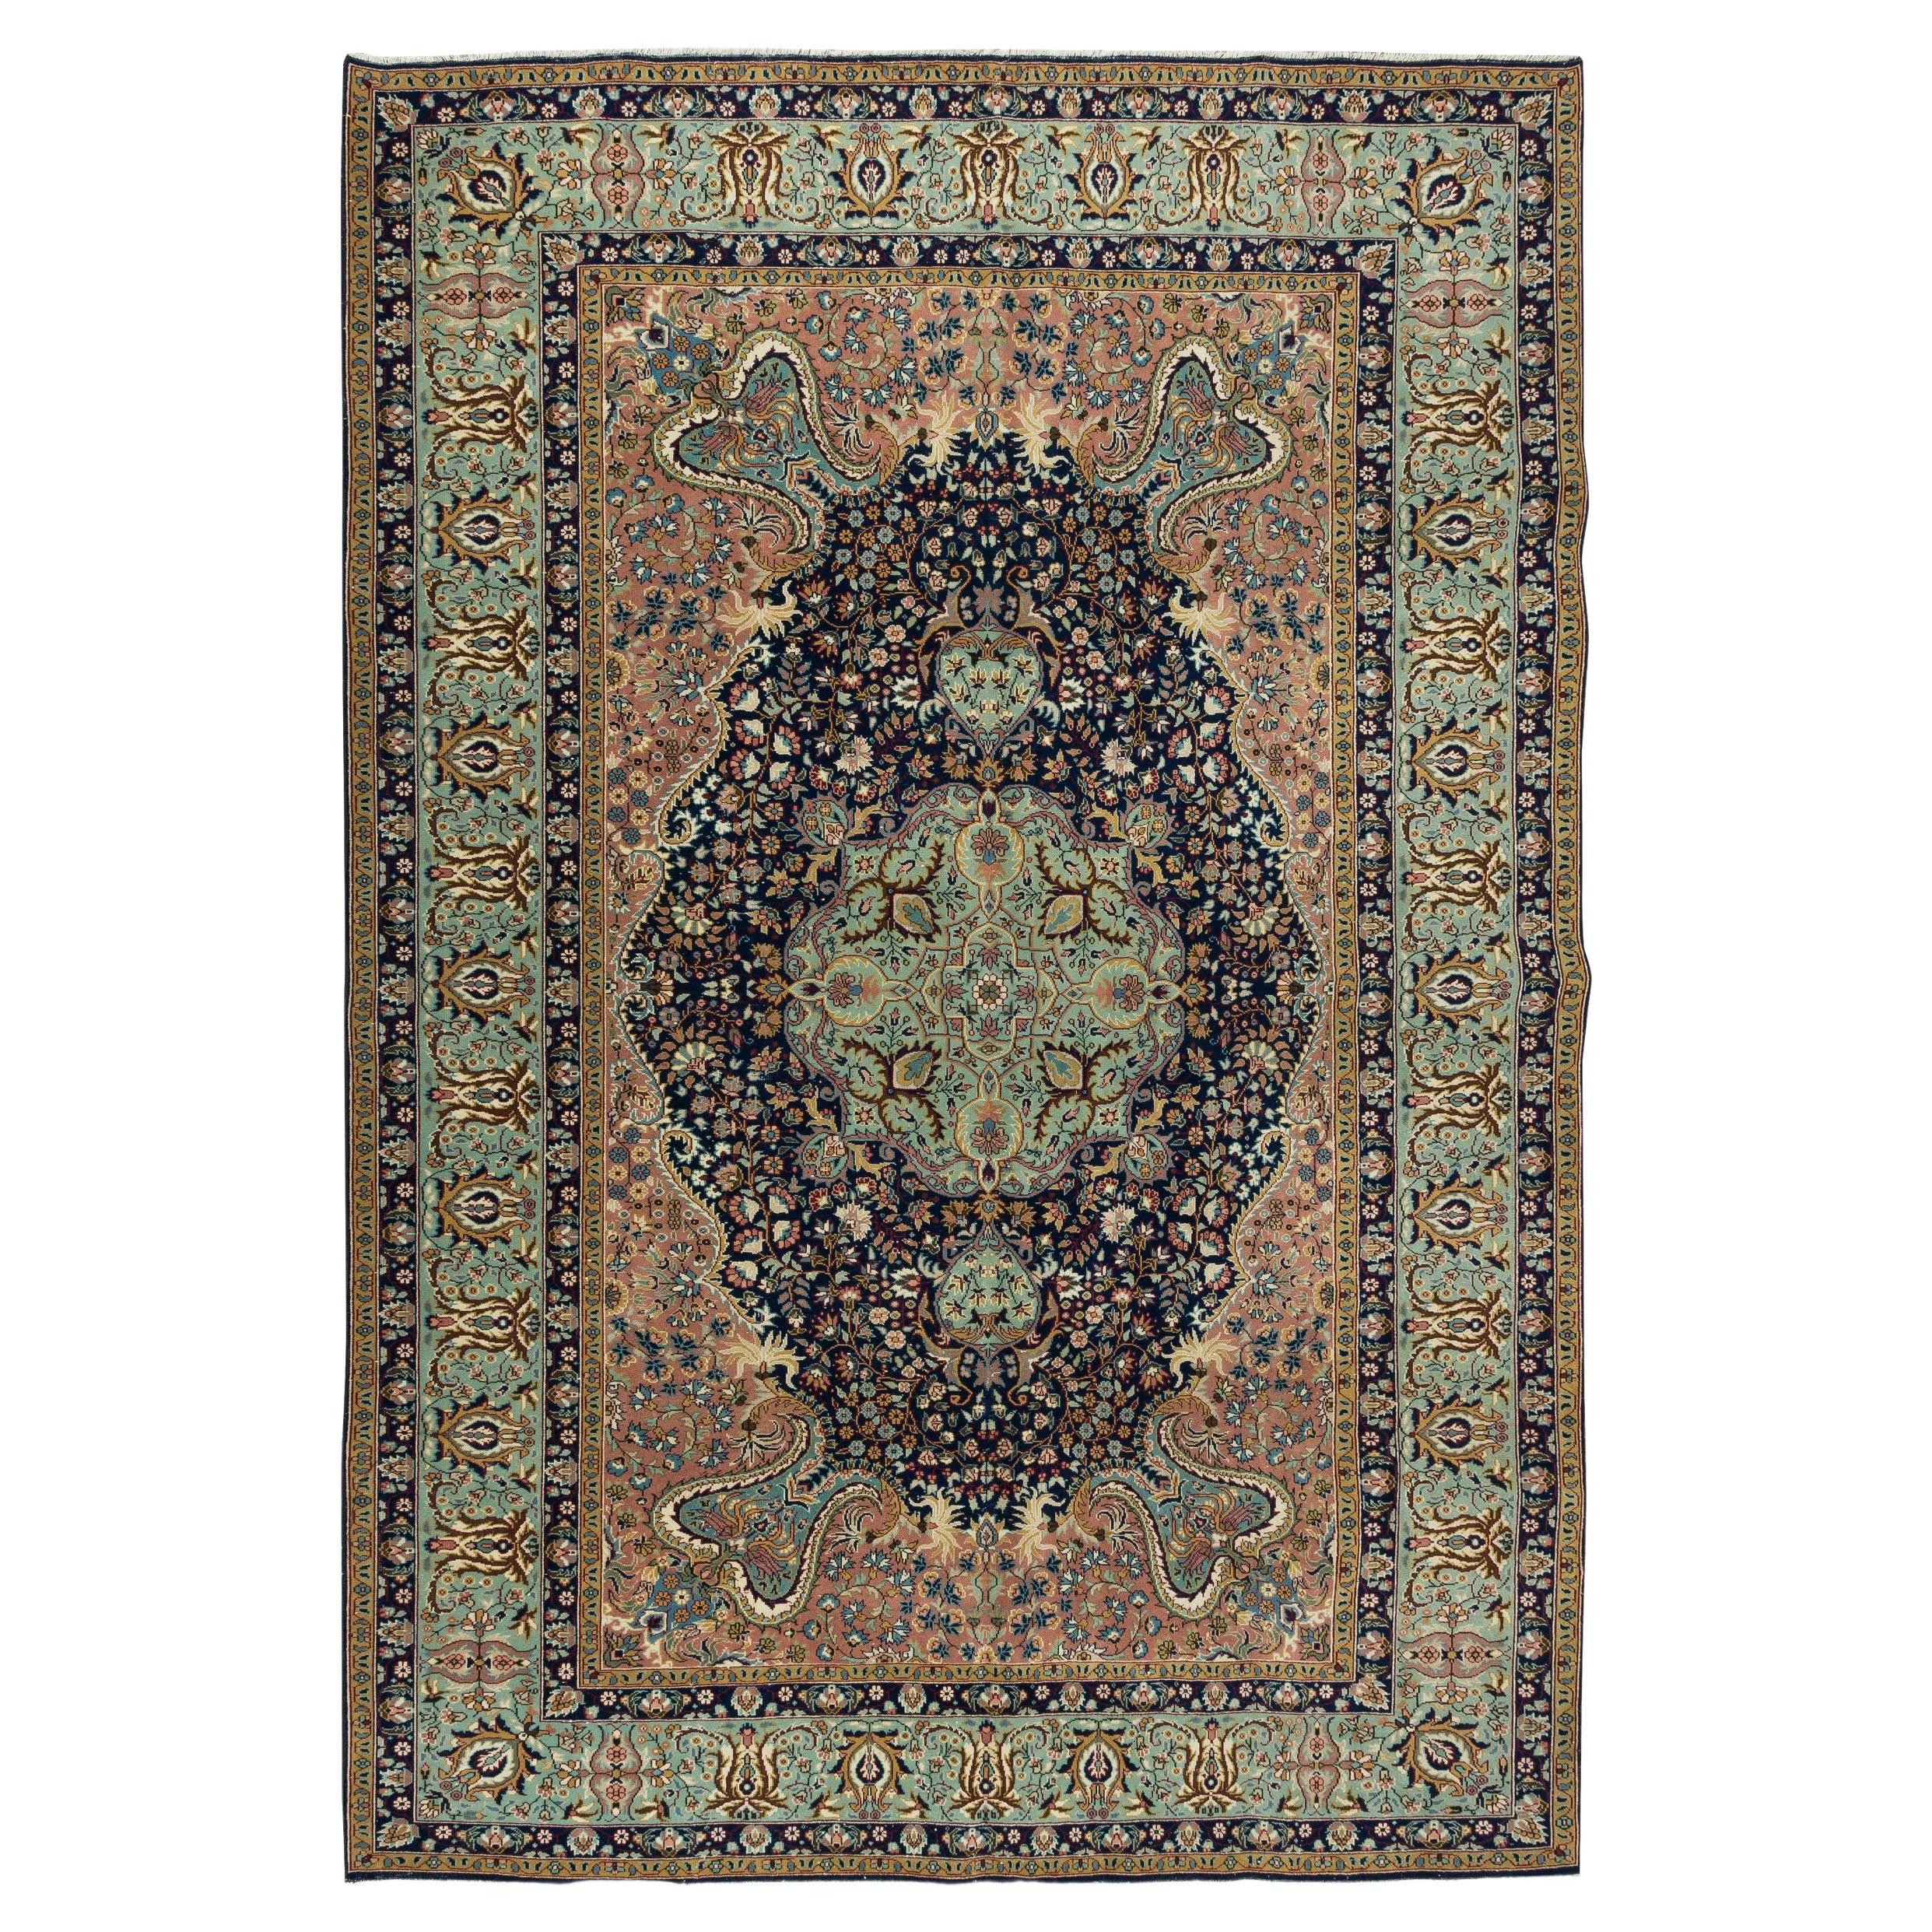 6.9x10.4 Ft Traditioneller handgefertigter türkischer Vintage-Teppich mit Medaillon-Design